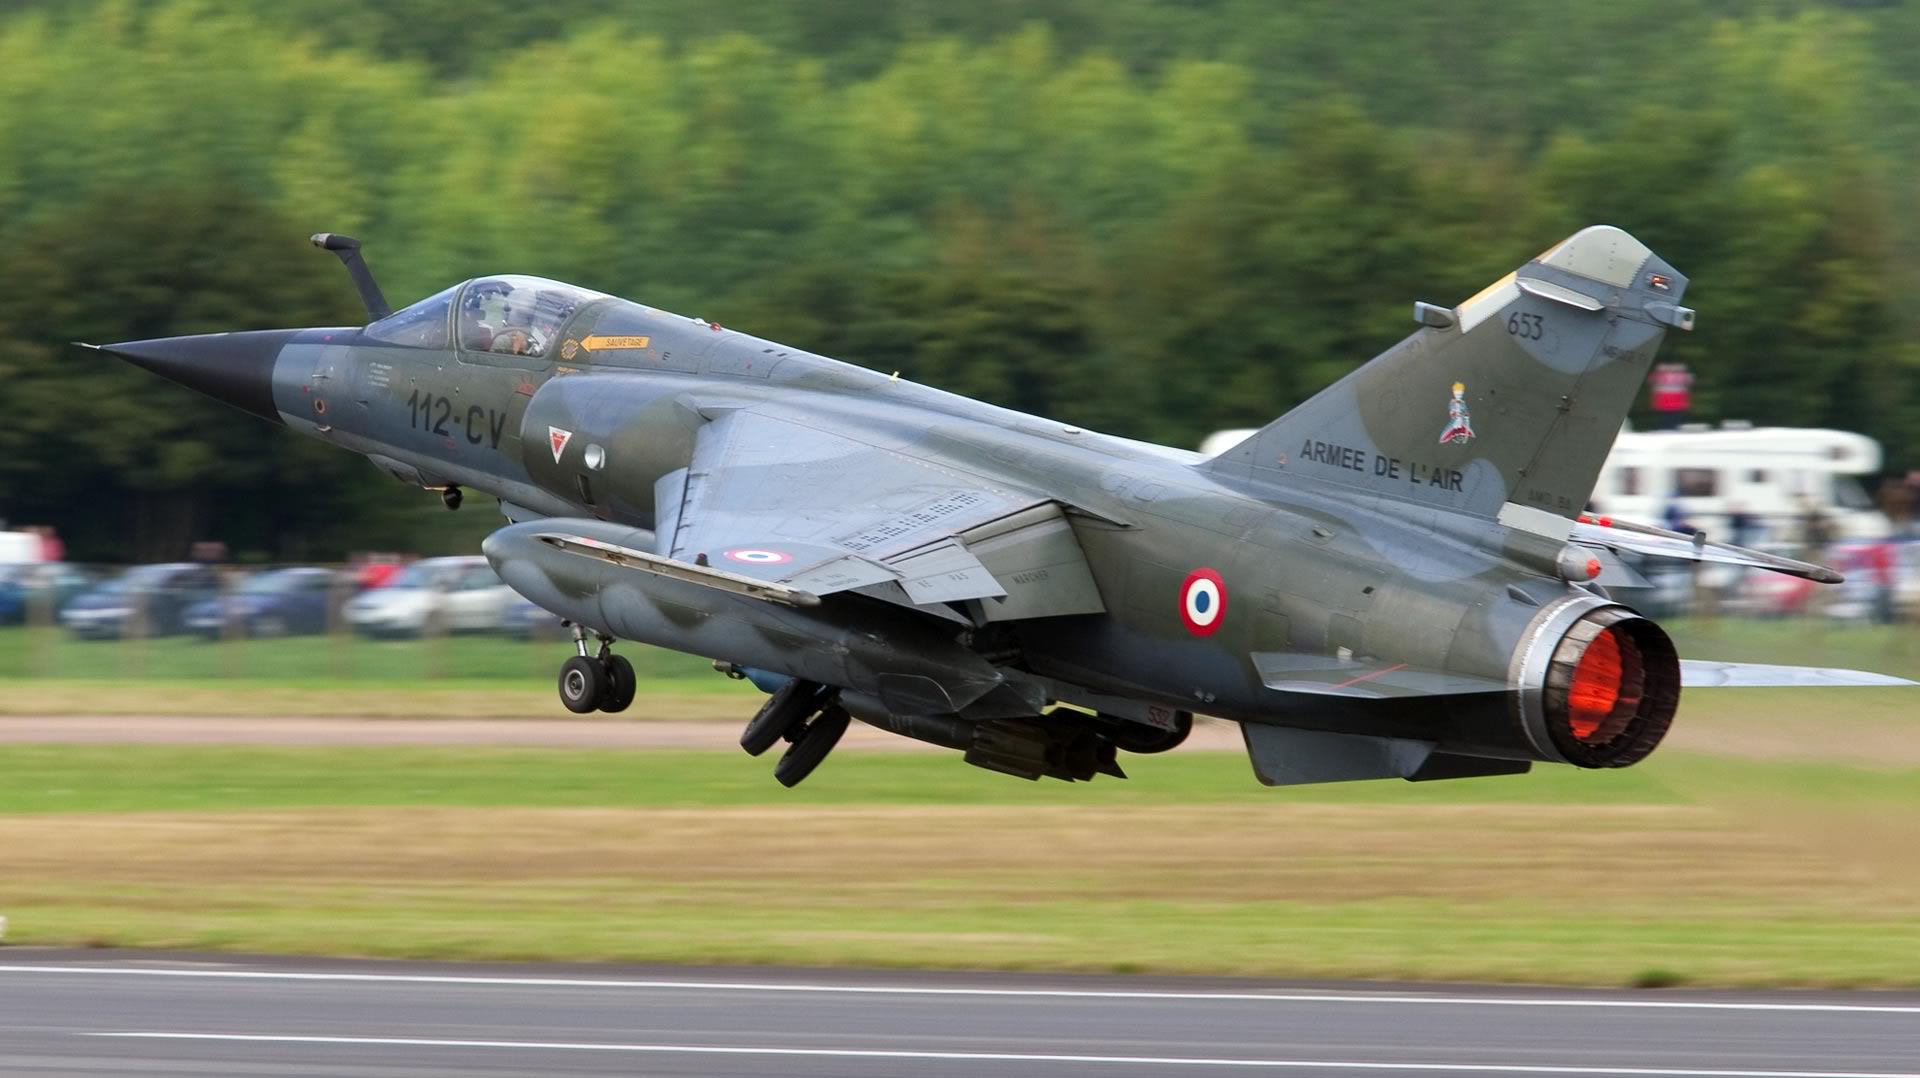 Télécharger des fonds d'écran Dassault Mirage F1 HD